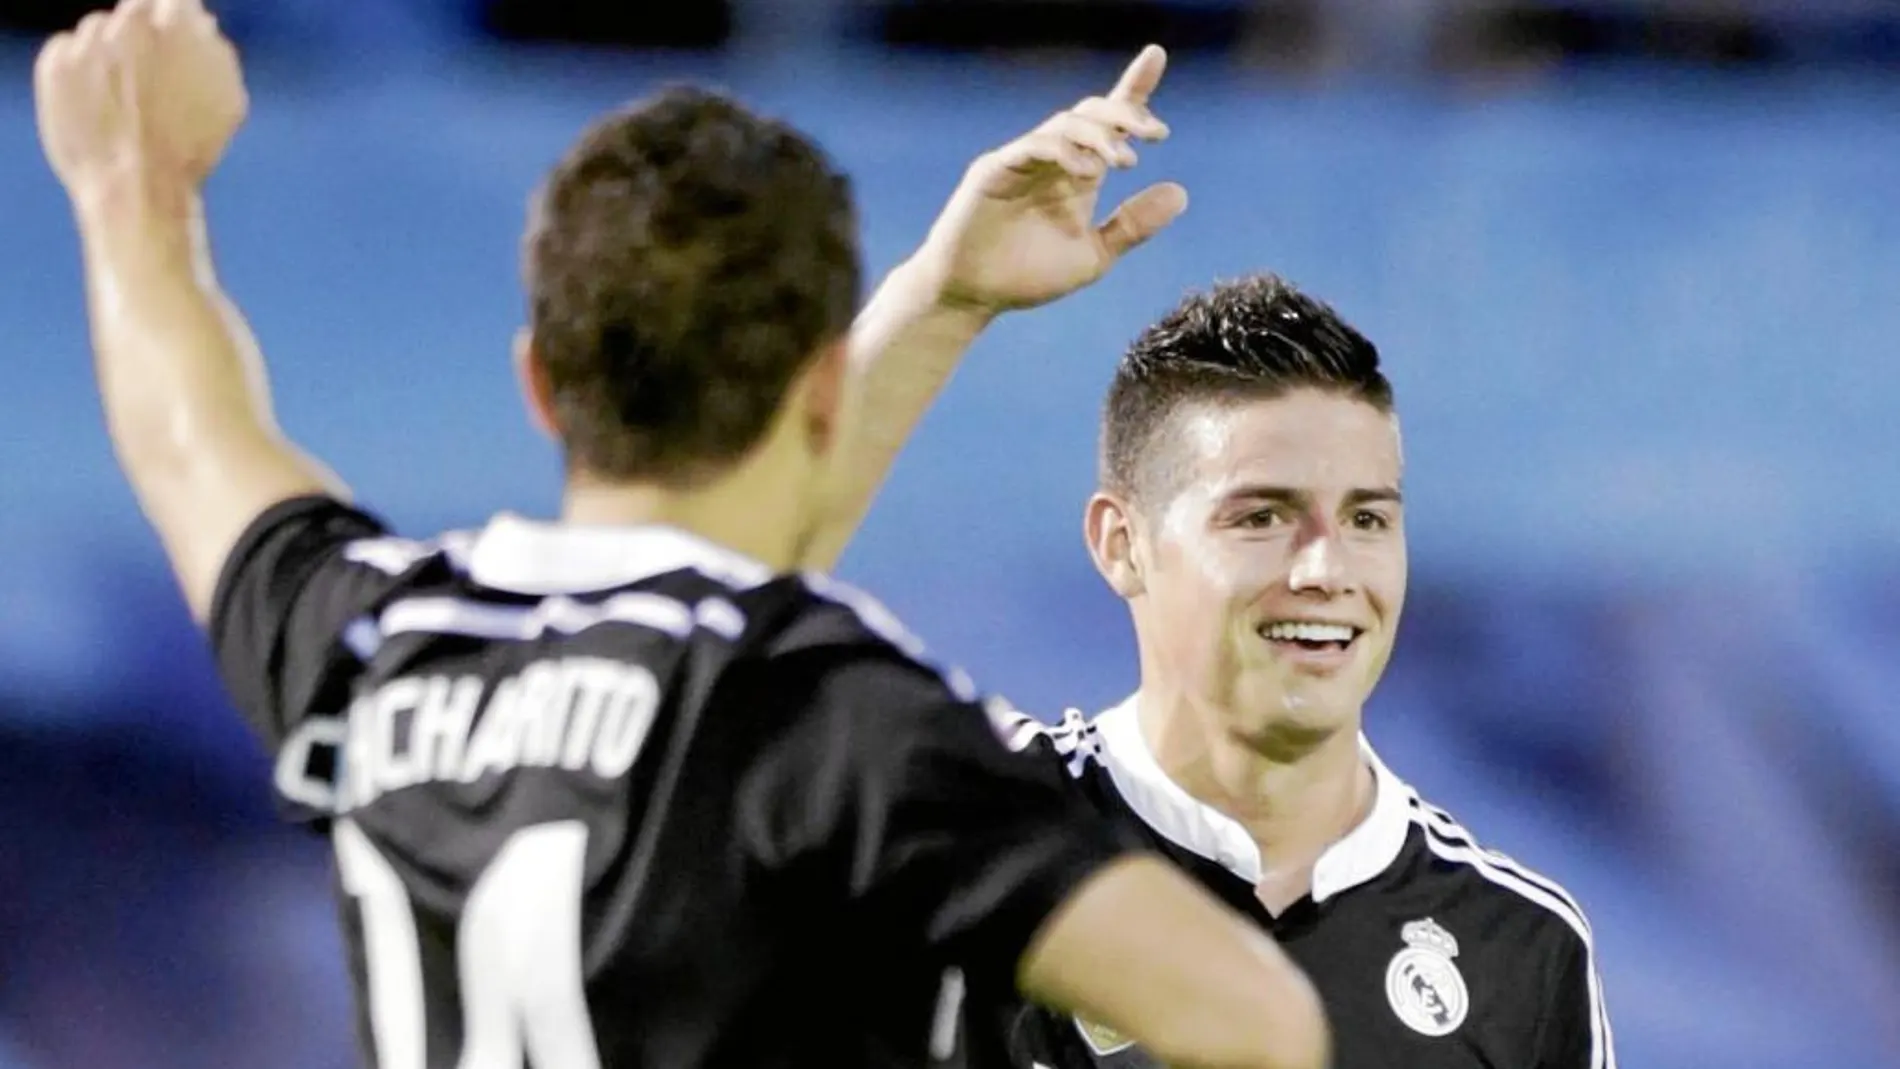 James y Chicharito volvieron a ser decisivos en una nueva victoria del Madrid